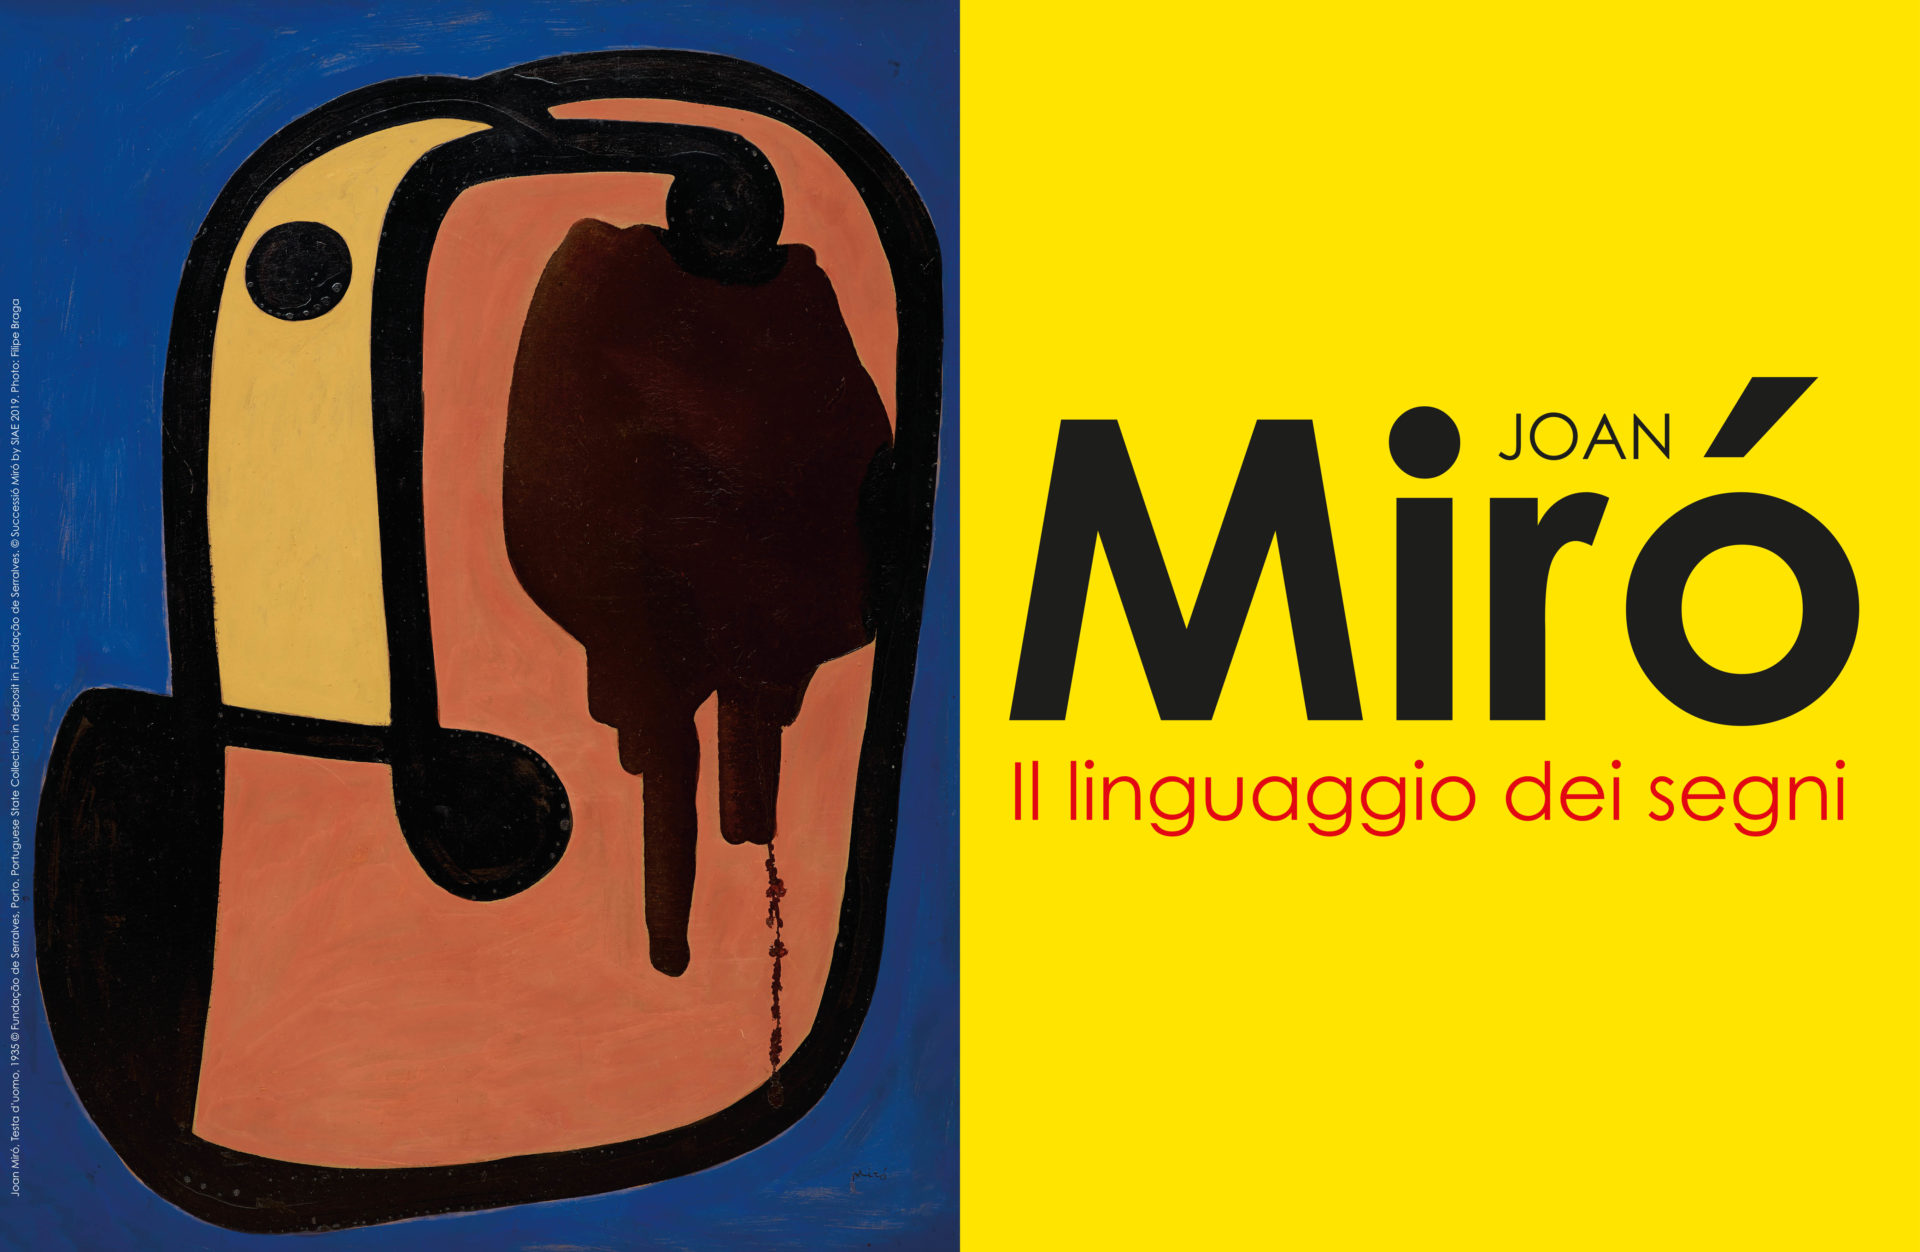 Al PAN Palazzo delle Arti Napoli l’esposizione dal titolo “Joan Miró. Il linguaggio dei segni”